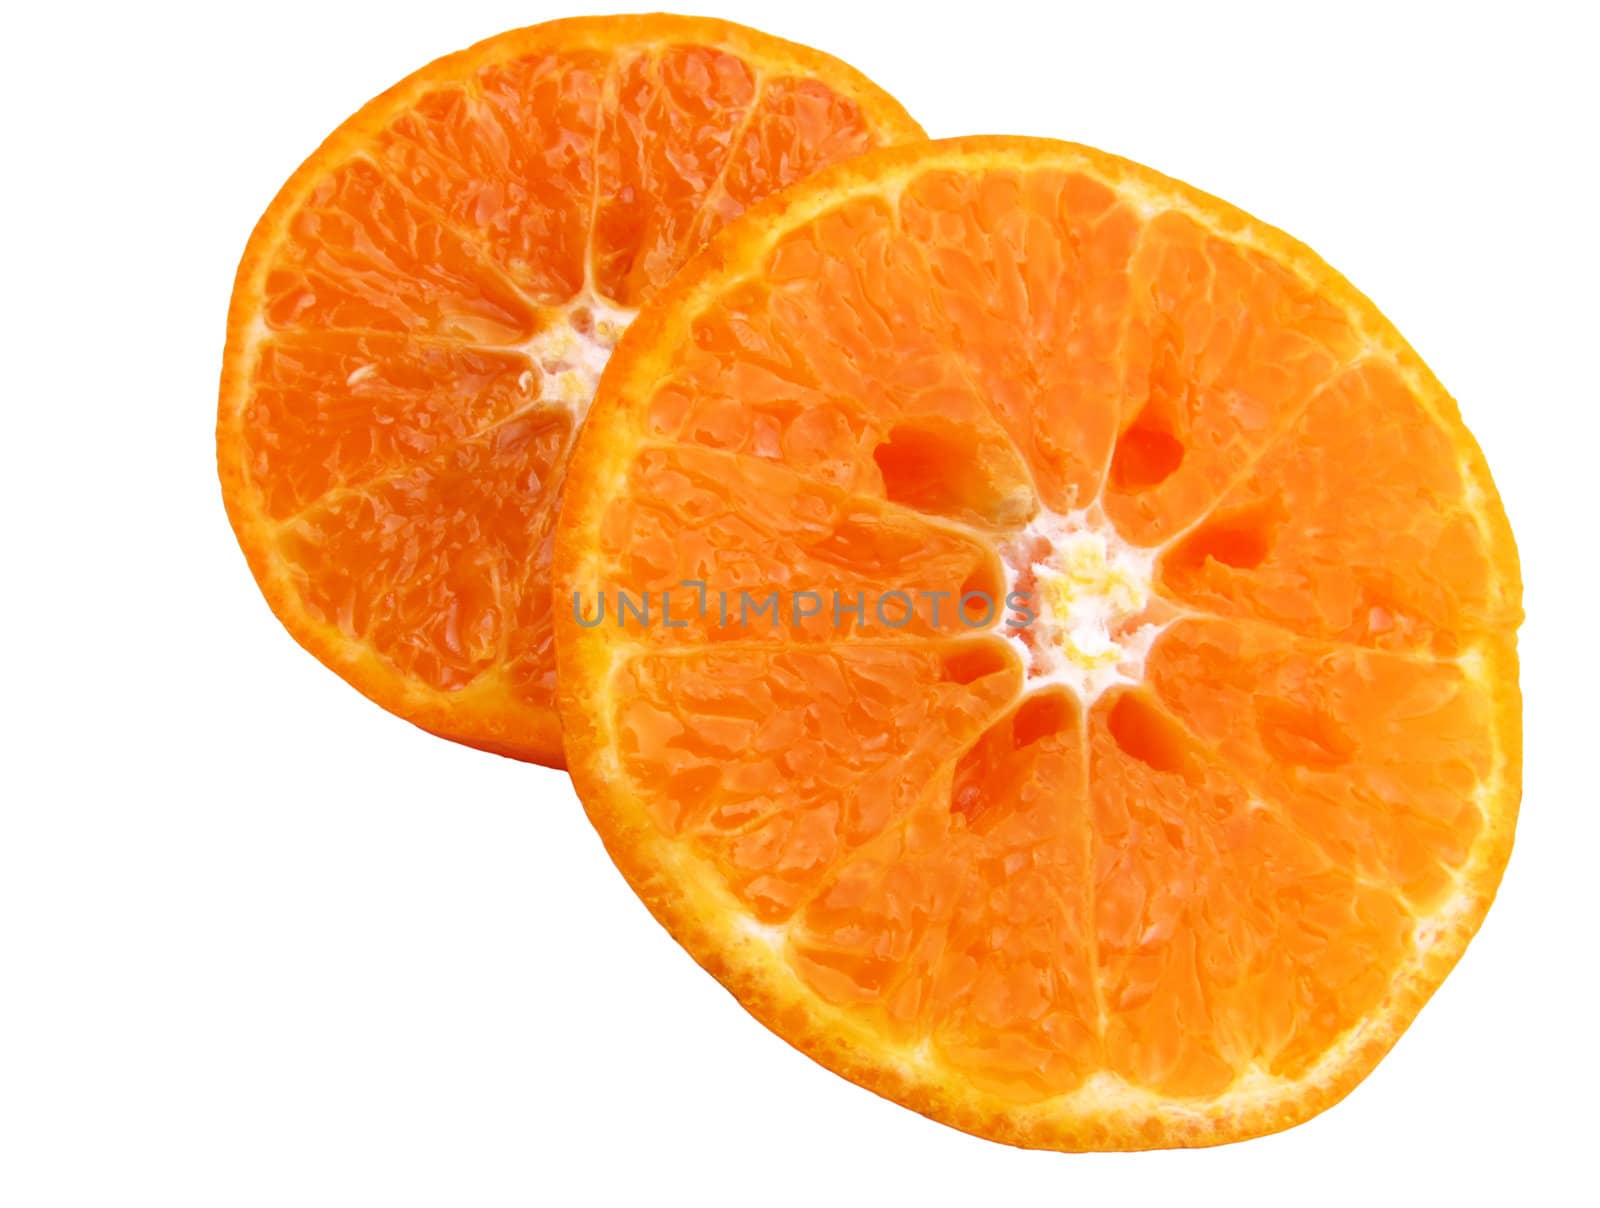 Juicy orange by lkant